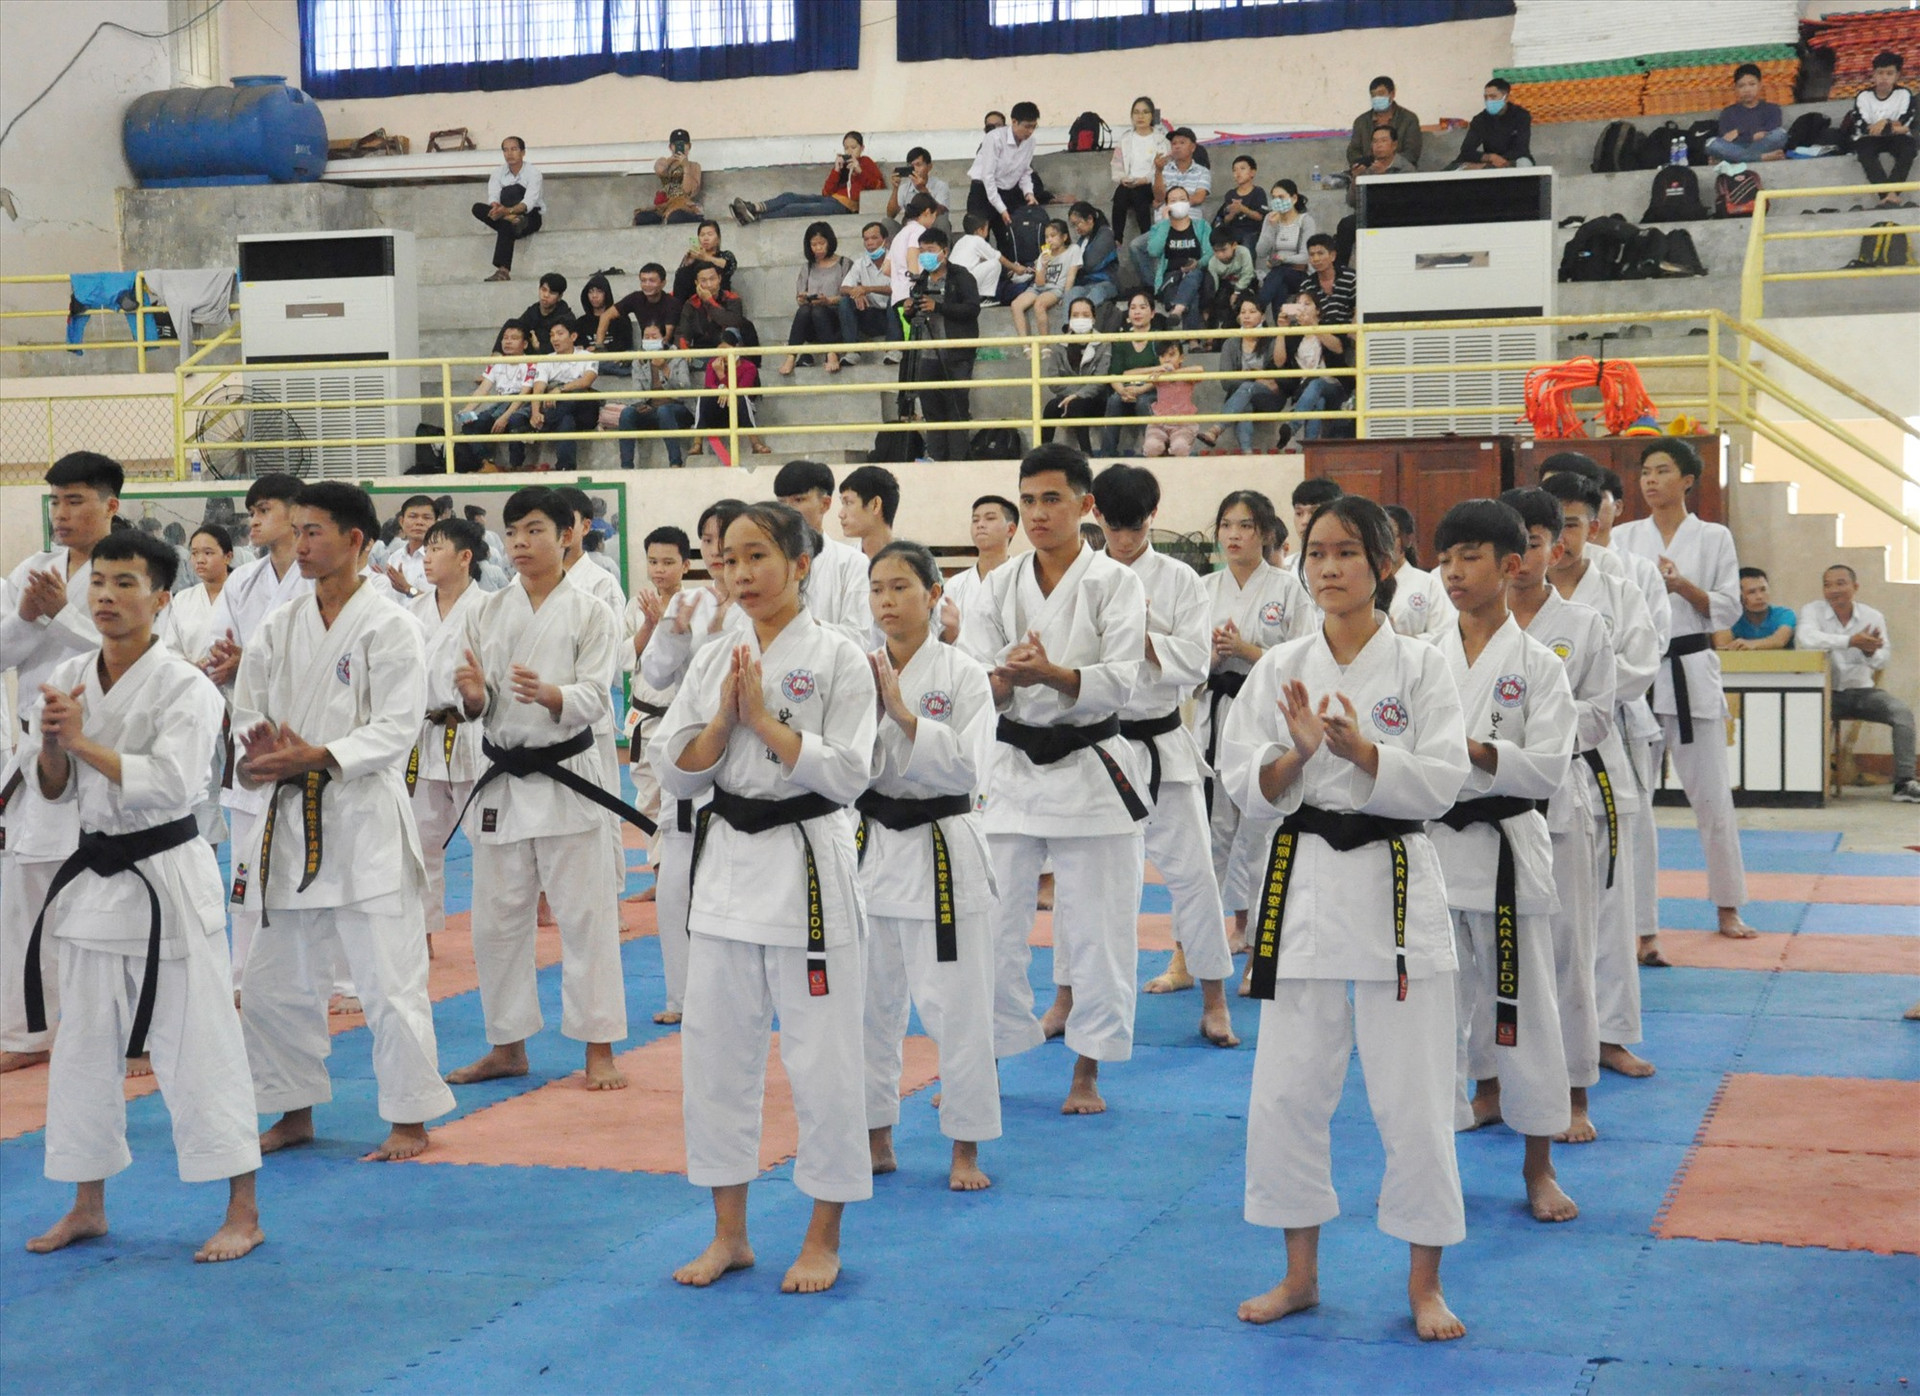 Phong trào Karate hiện phát triển mạnh mẽ tại 14 địa phương trên địa bàn tỉnh. Ảnh: T.VY